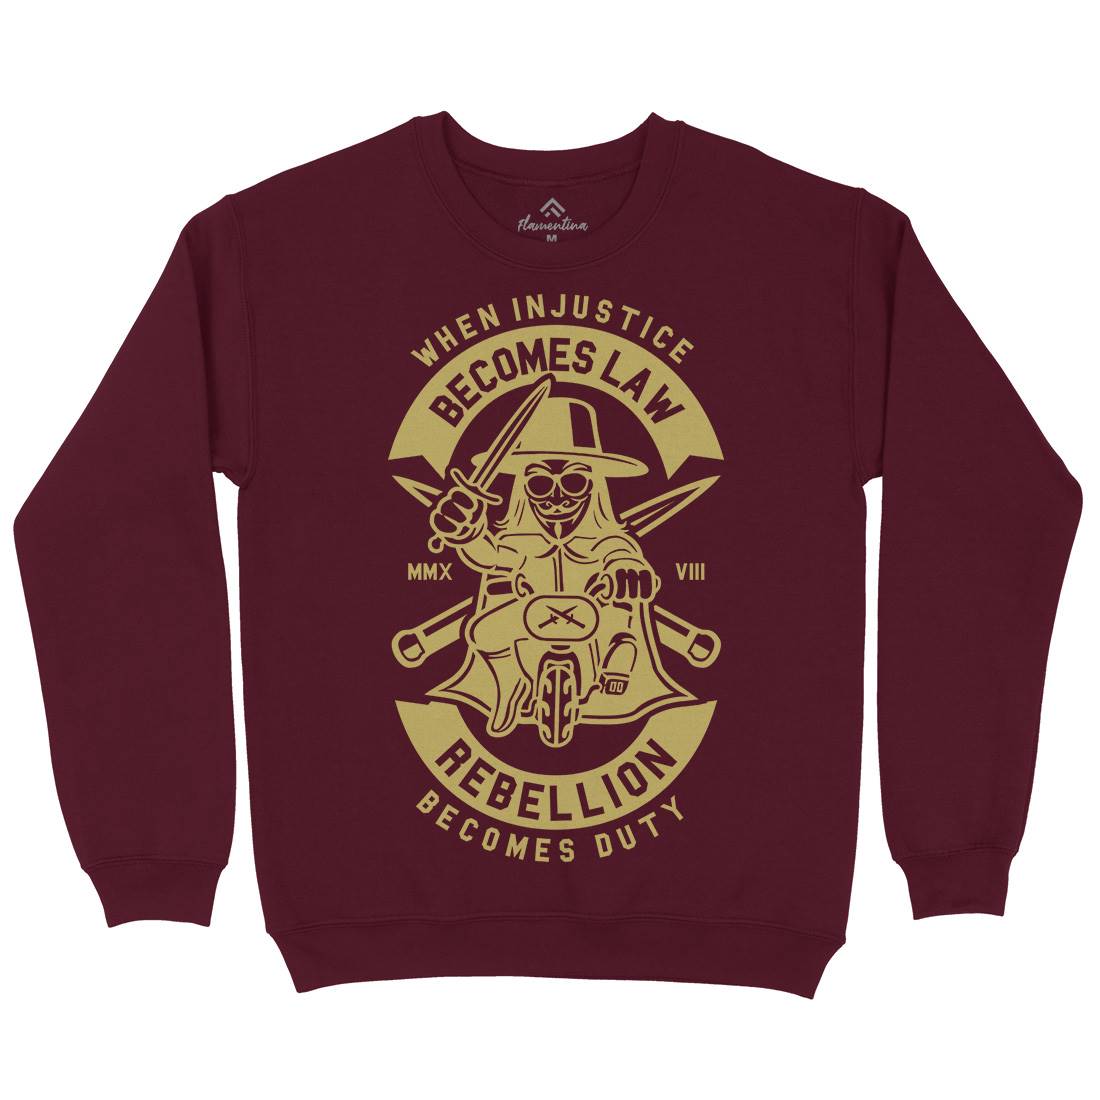 Rebellion Kids Crew Neck Sweatshirt Illuminati A267